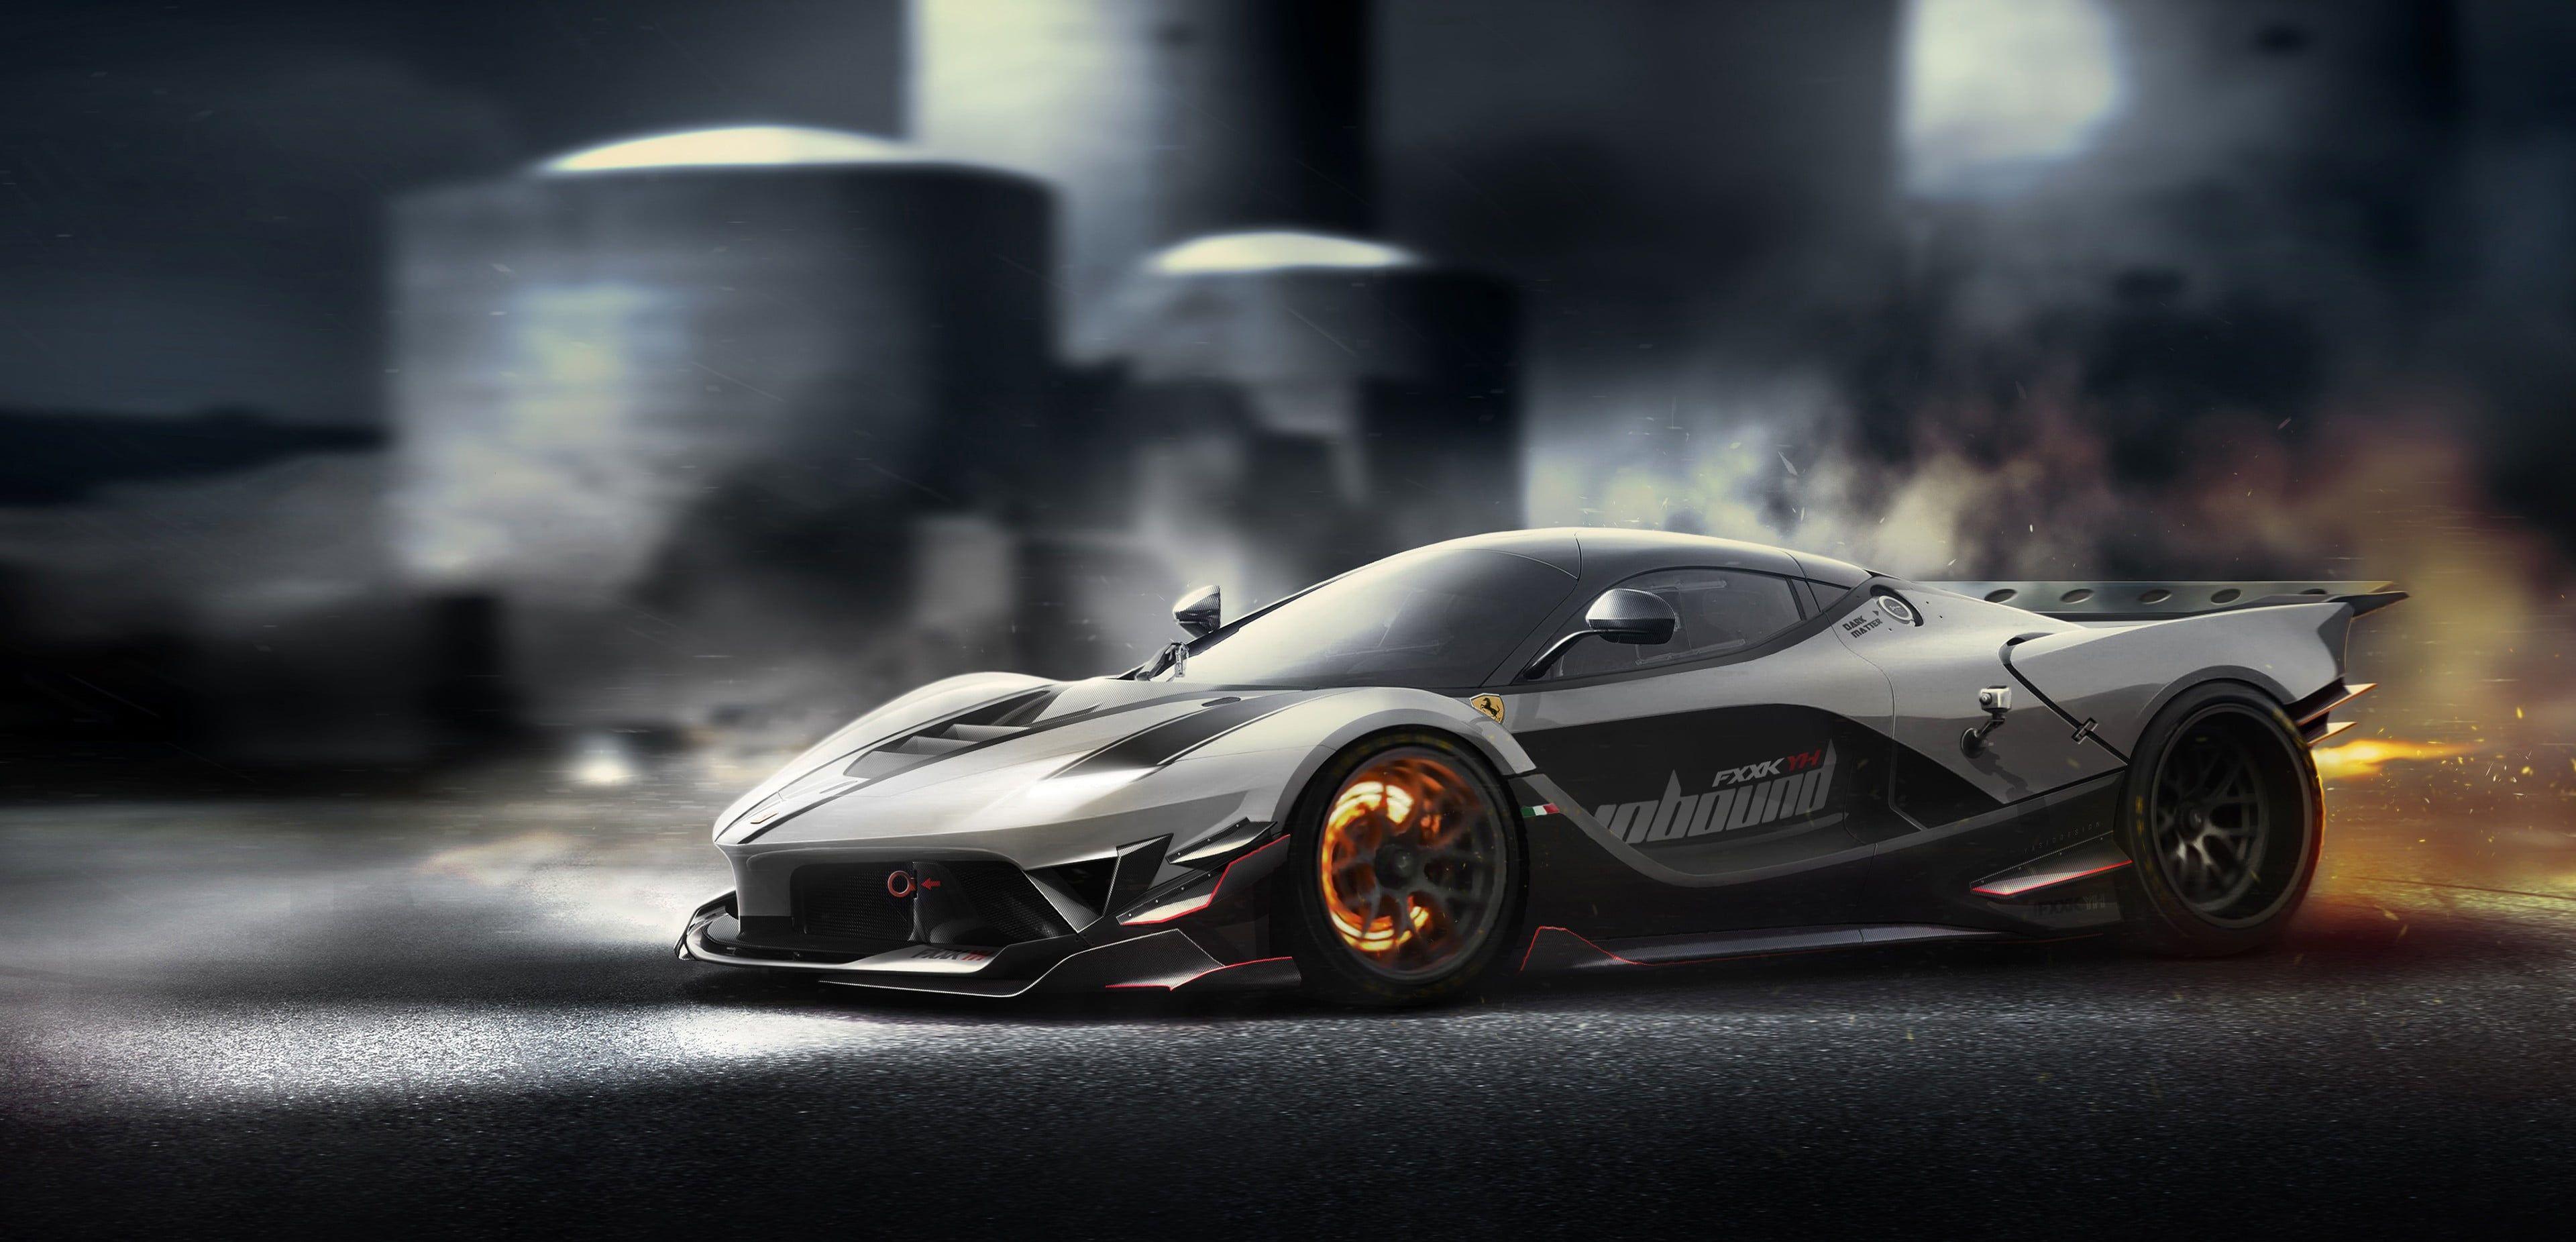 HD Wallpaper Black Sports Car Ferrari Fxxk Motion Blur